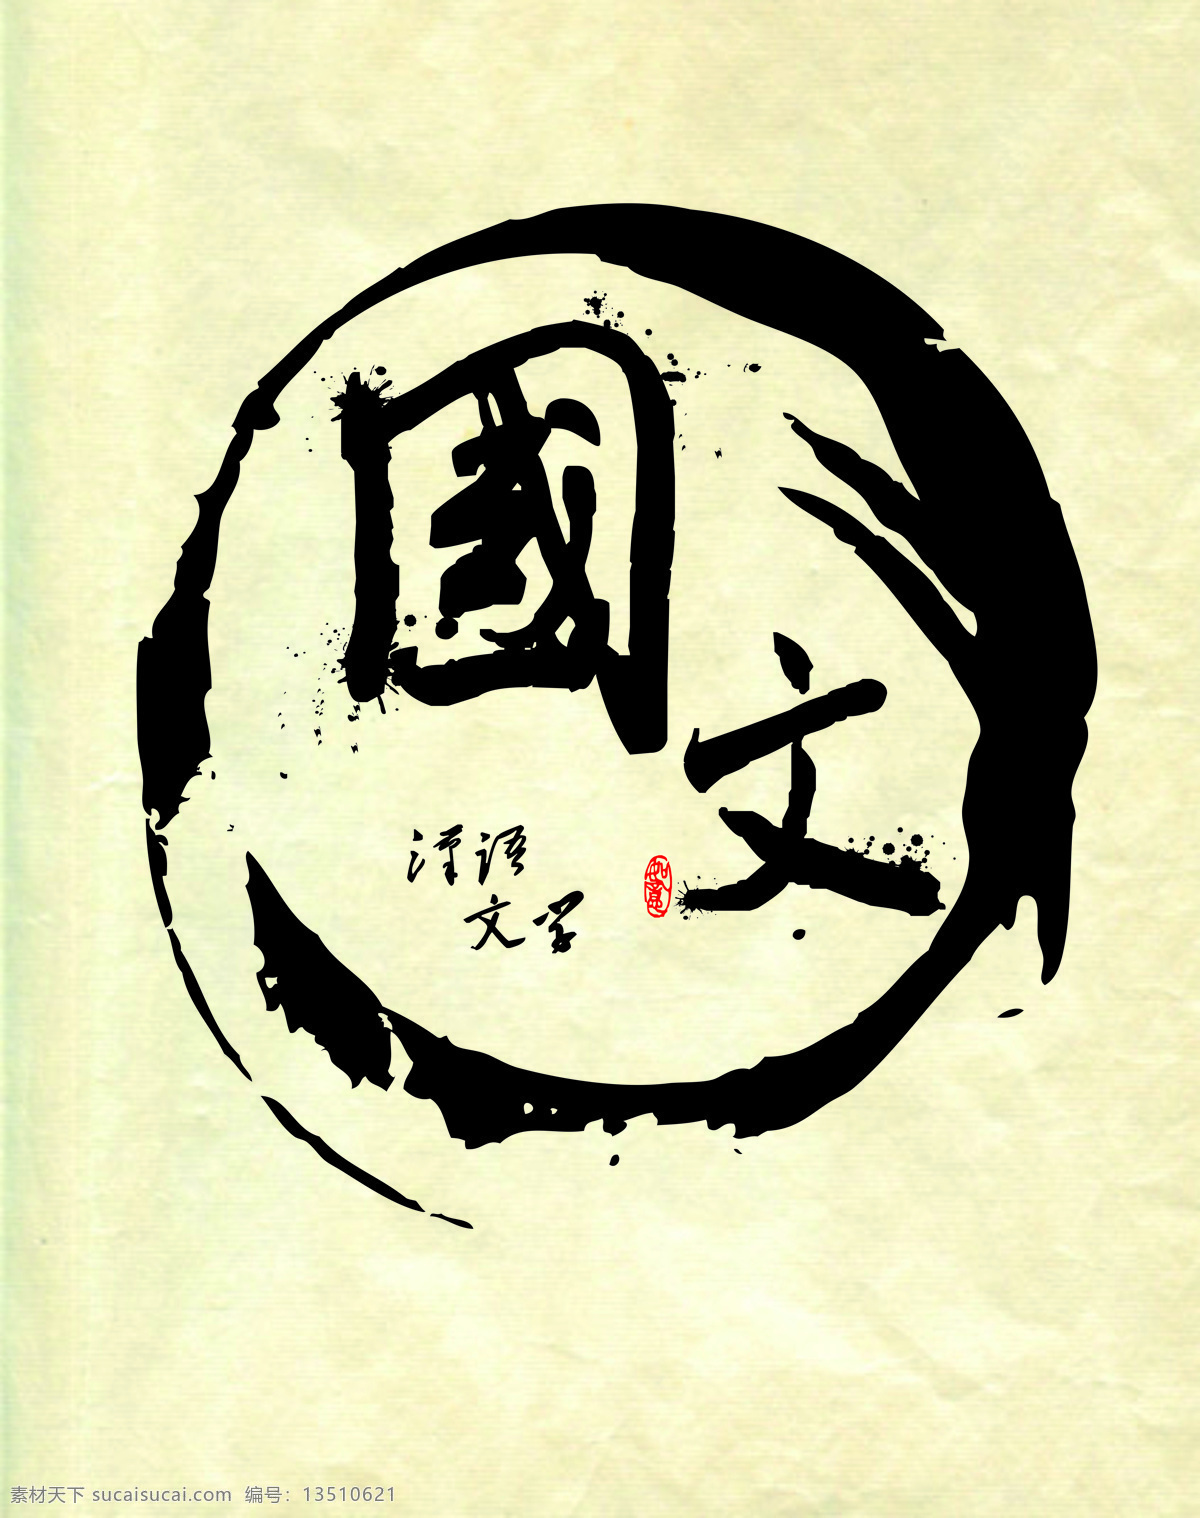 国文国学 毛笔字设计 汉语文 汉语文学 牛皮纸底图 文化艺术